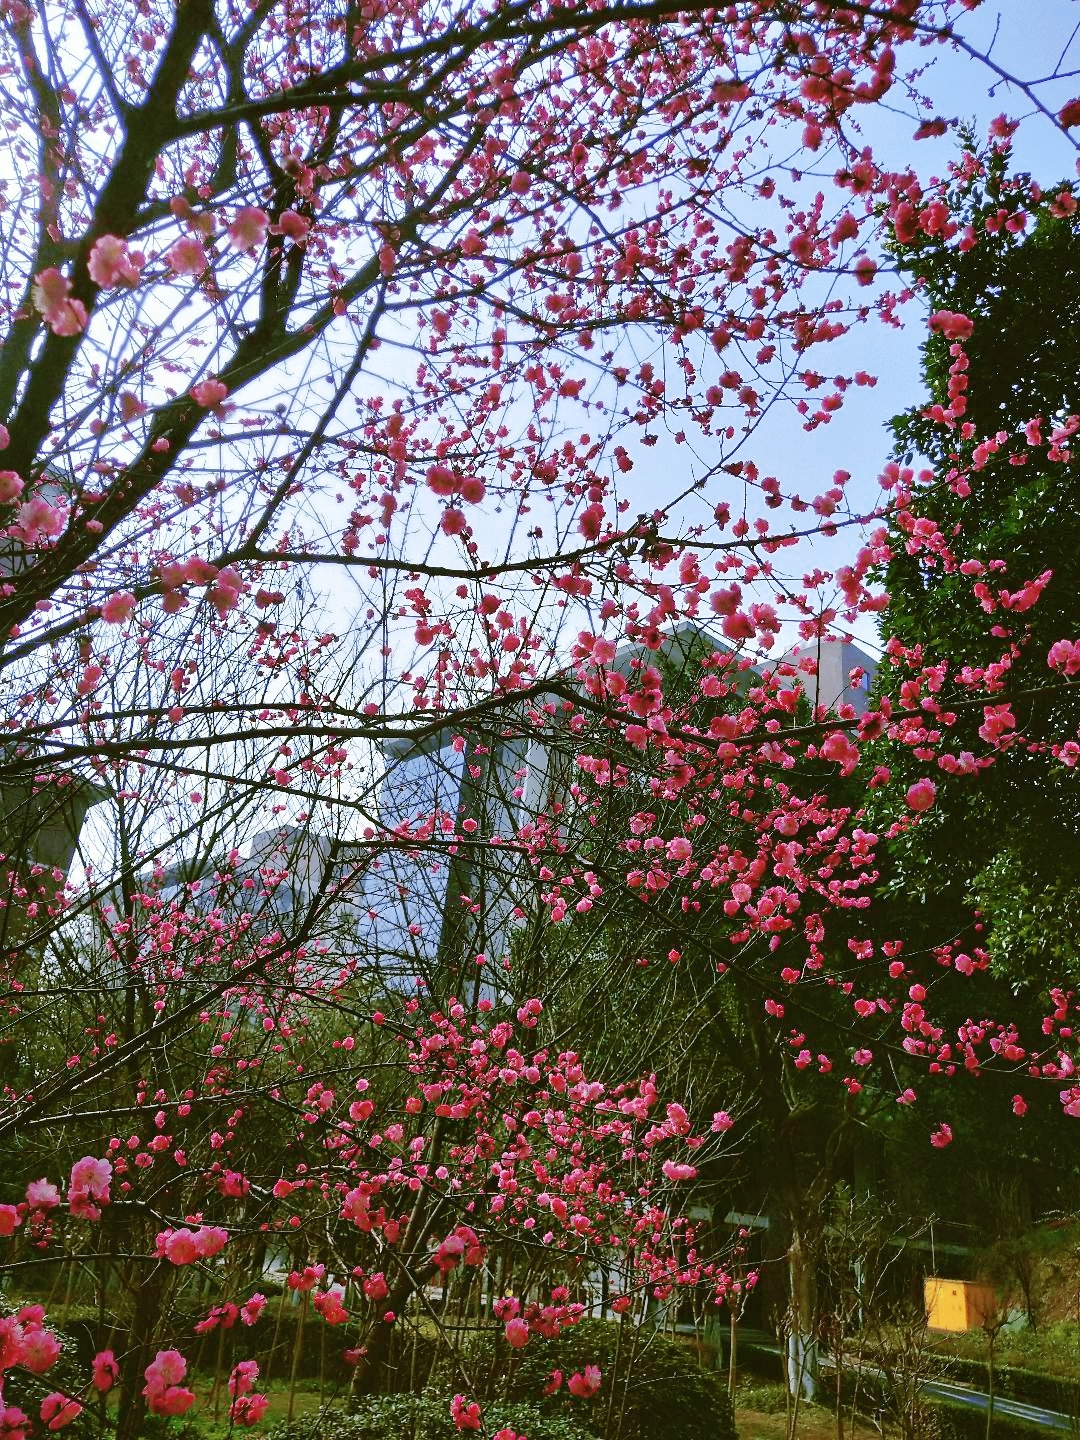 樱花树下,春日的浪漫与现代的钢铁森林交织,构成一幅梦幻画面